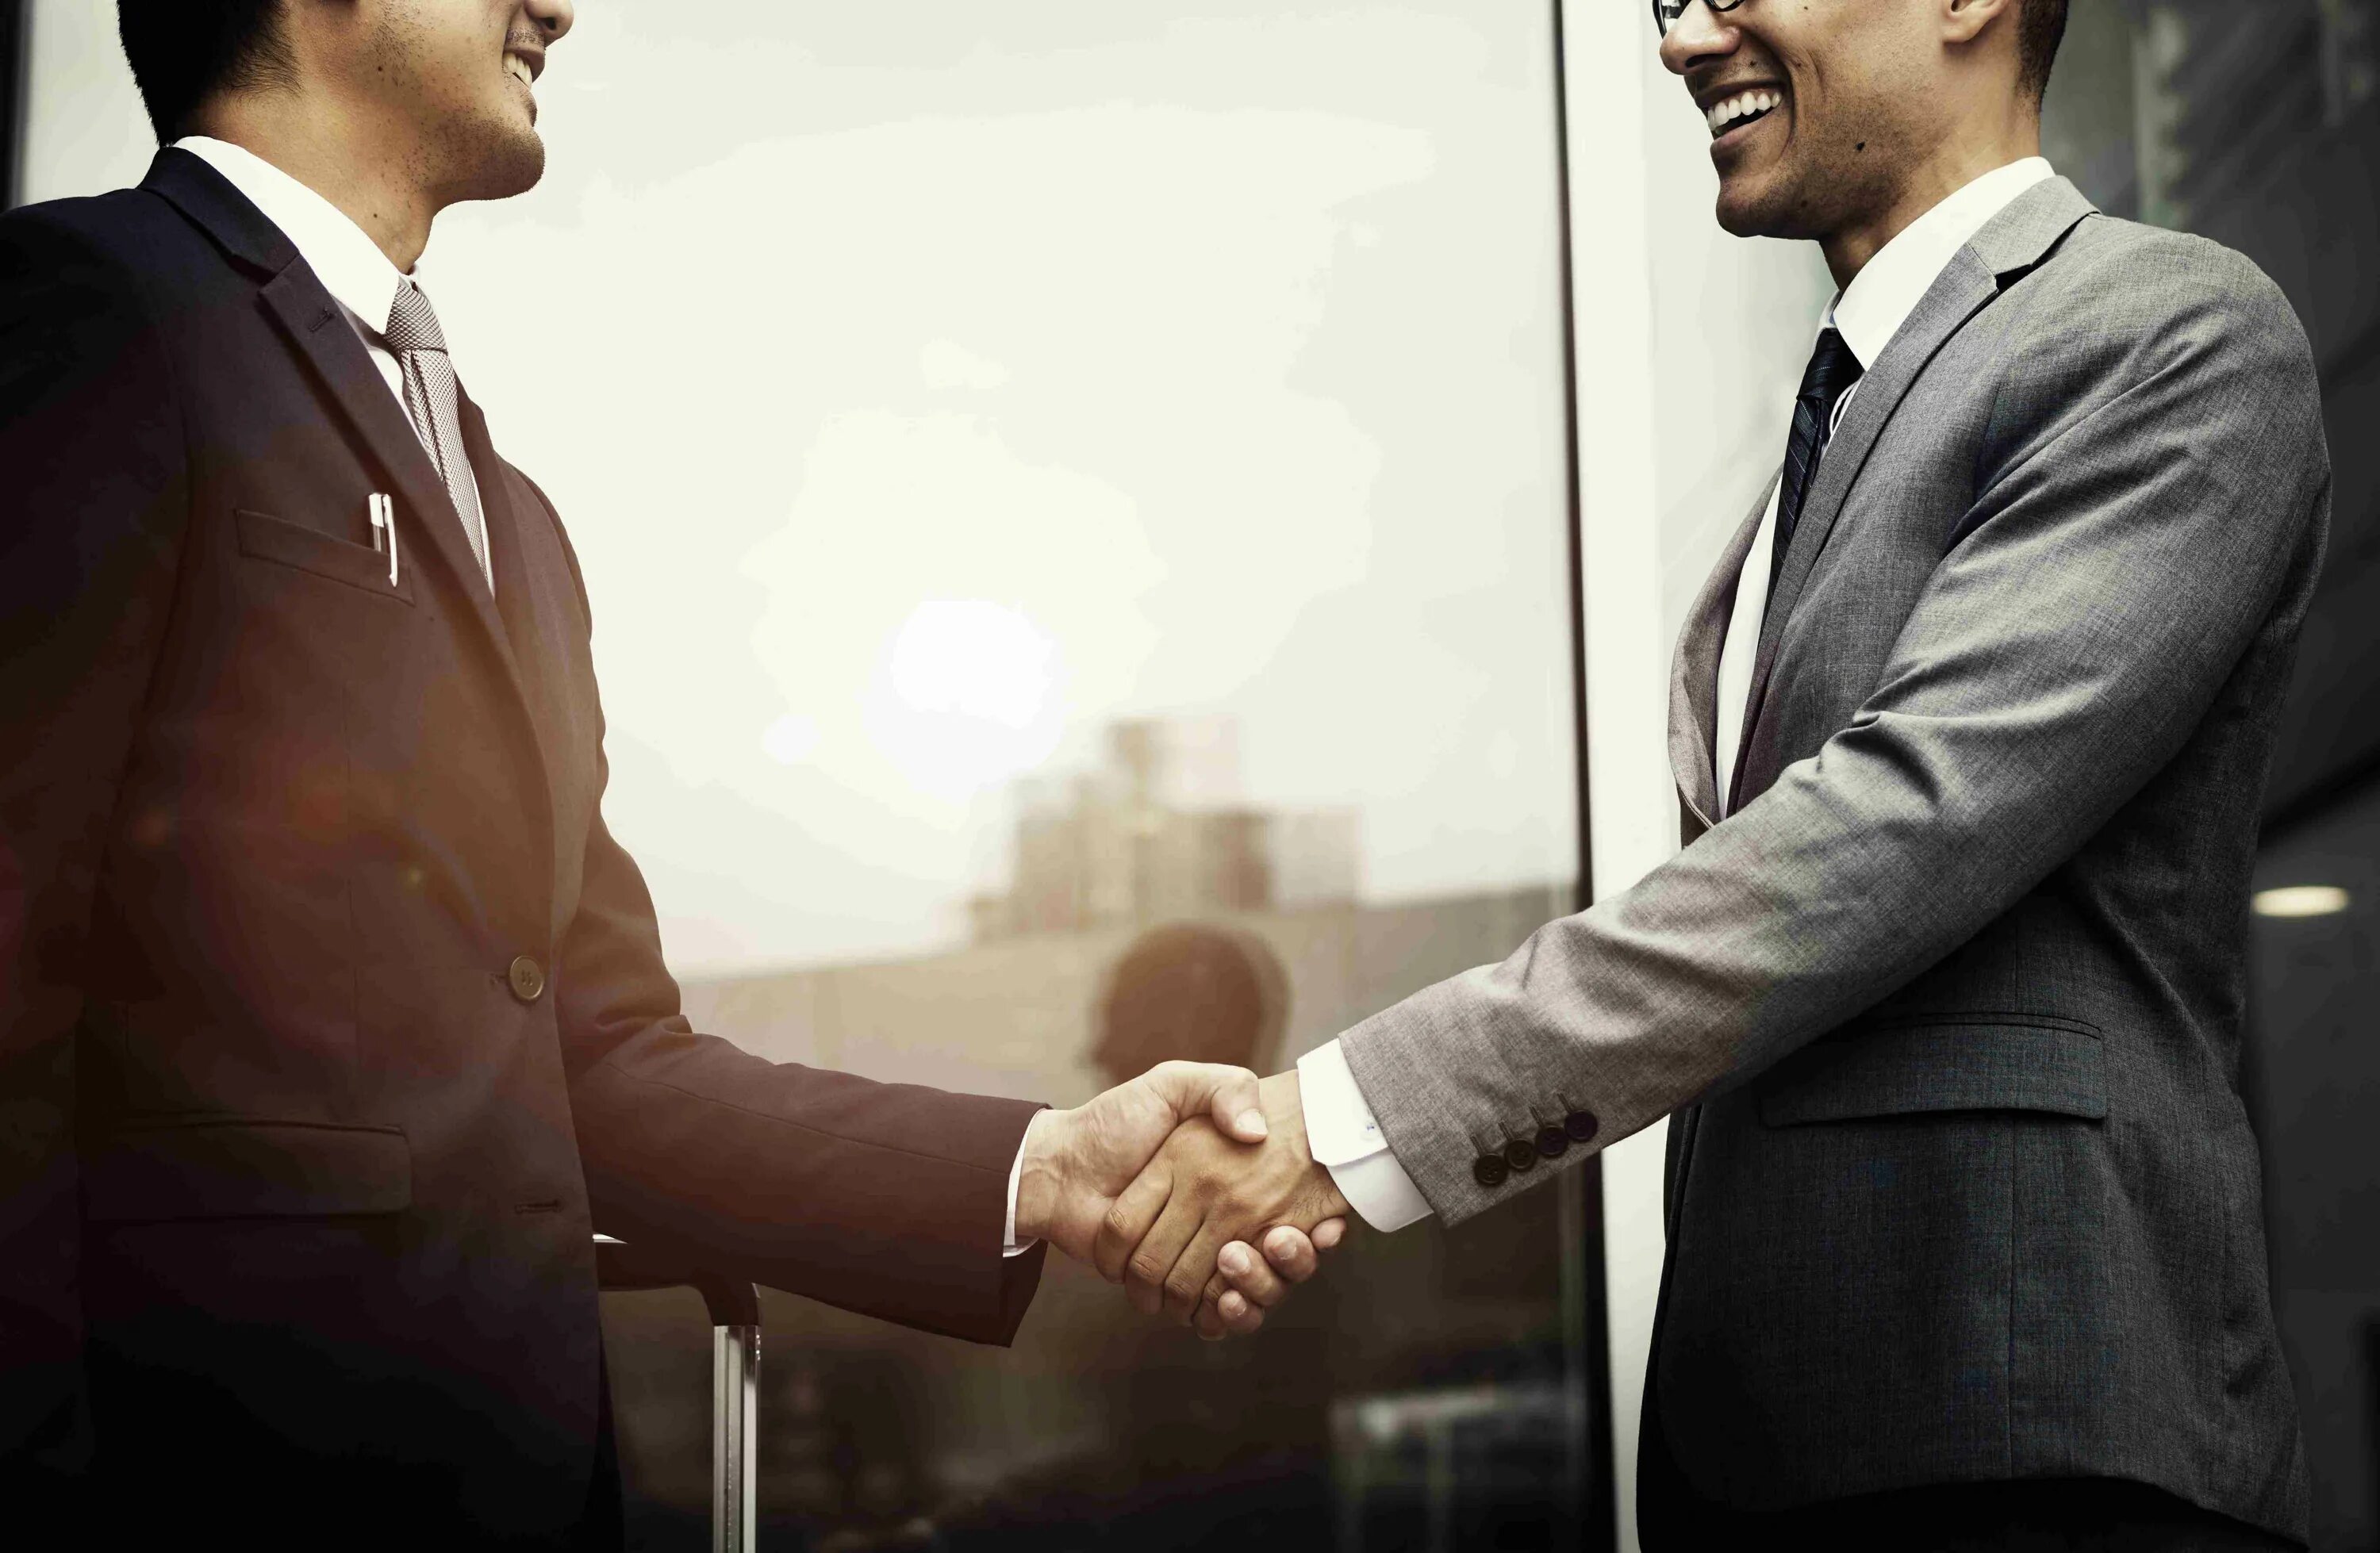 Client handshake. Бизнесмены пожимают руки. Рукопожатие бизнесменов. Рукопожатие деловых партнеров. Мужчины жмут руки.